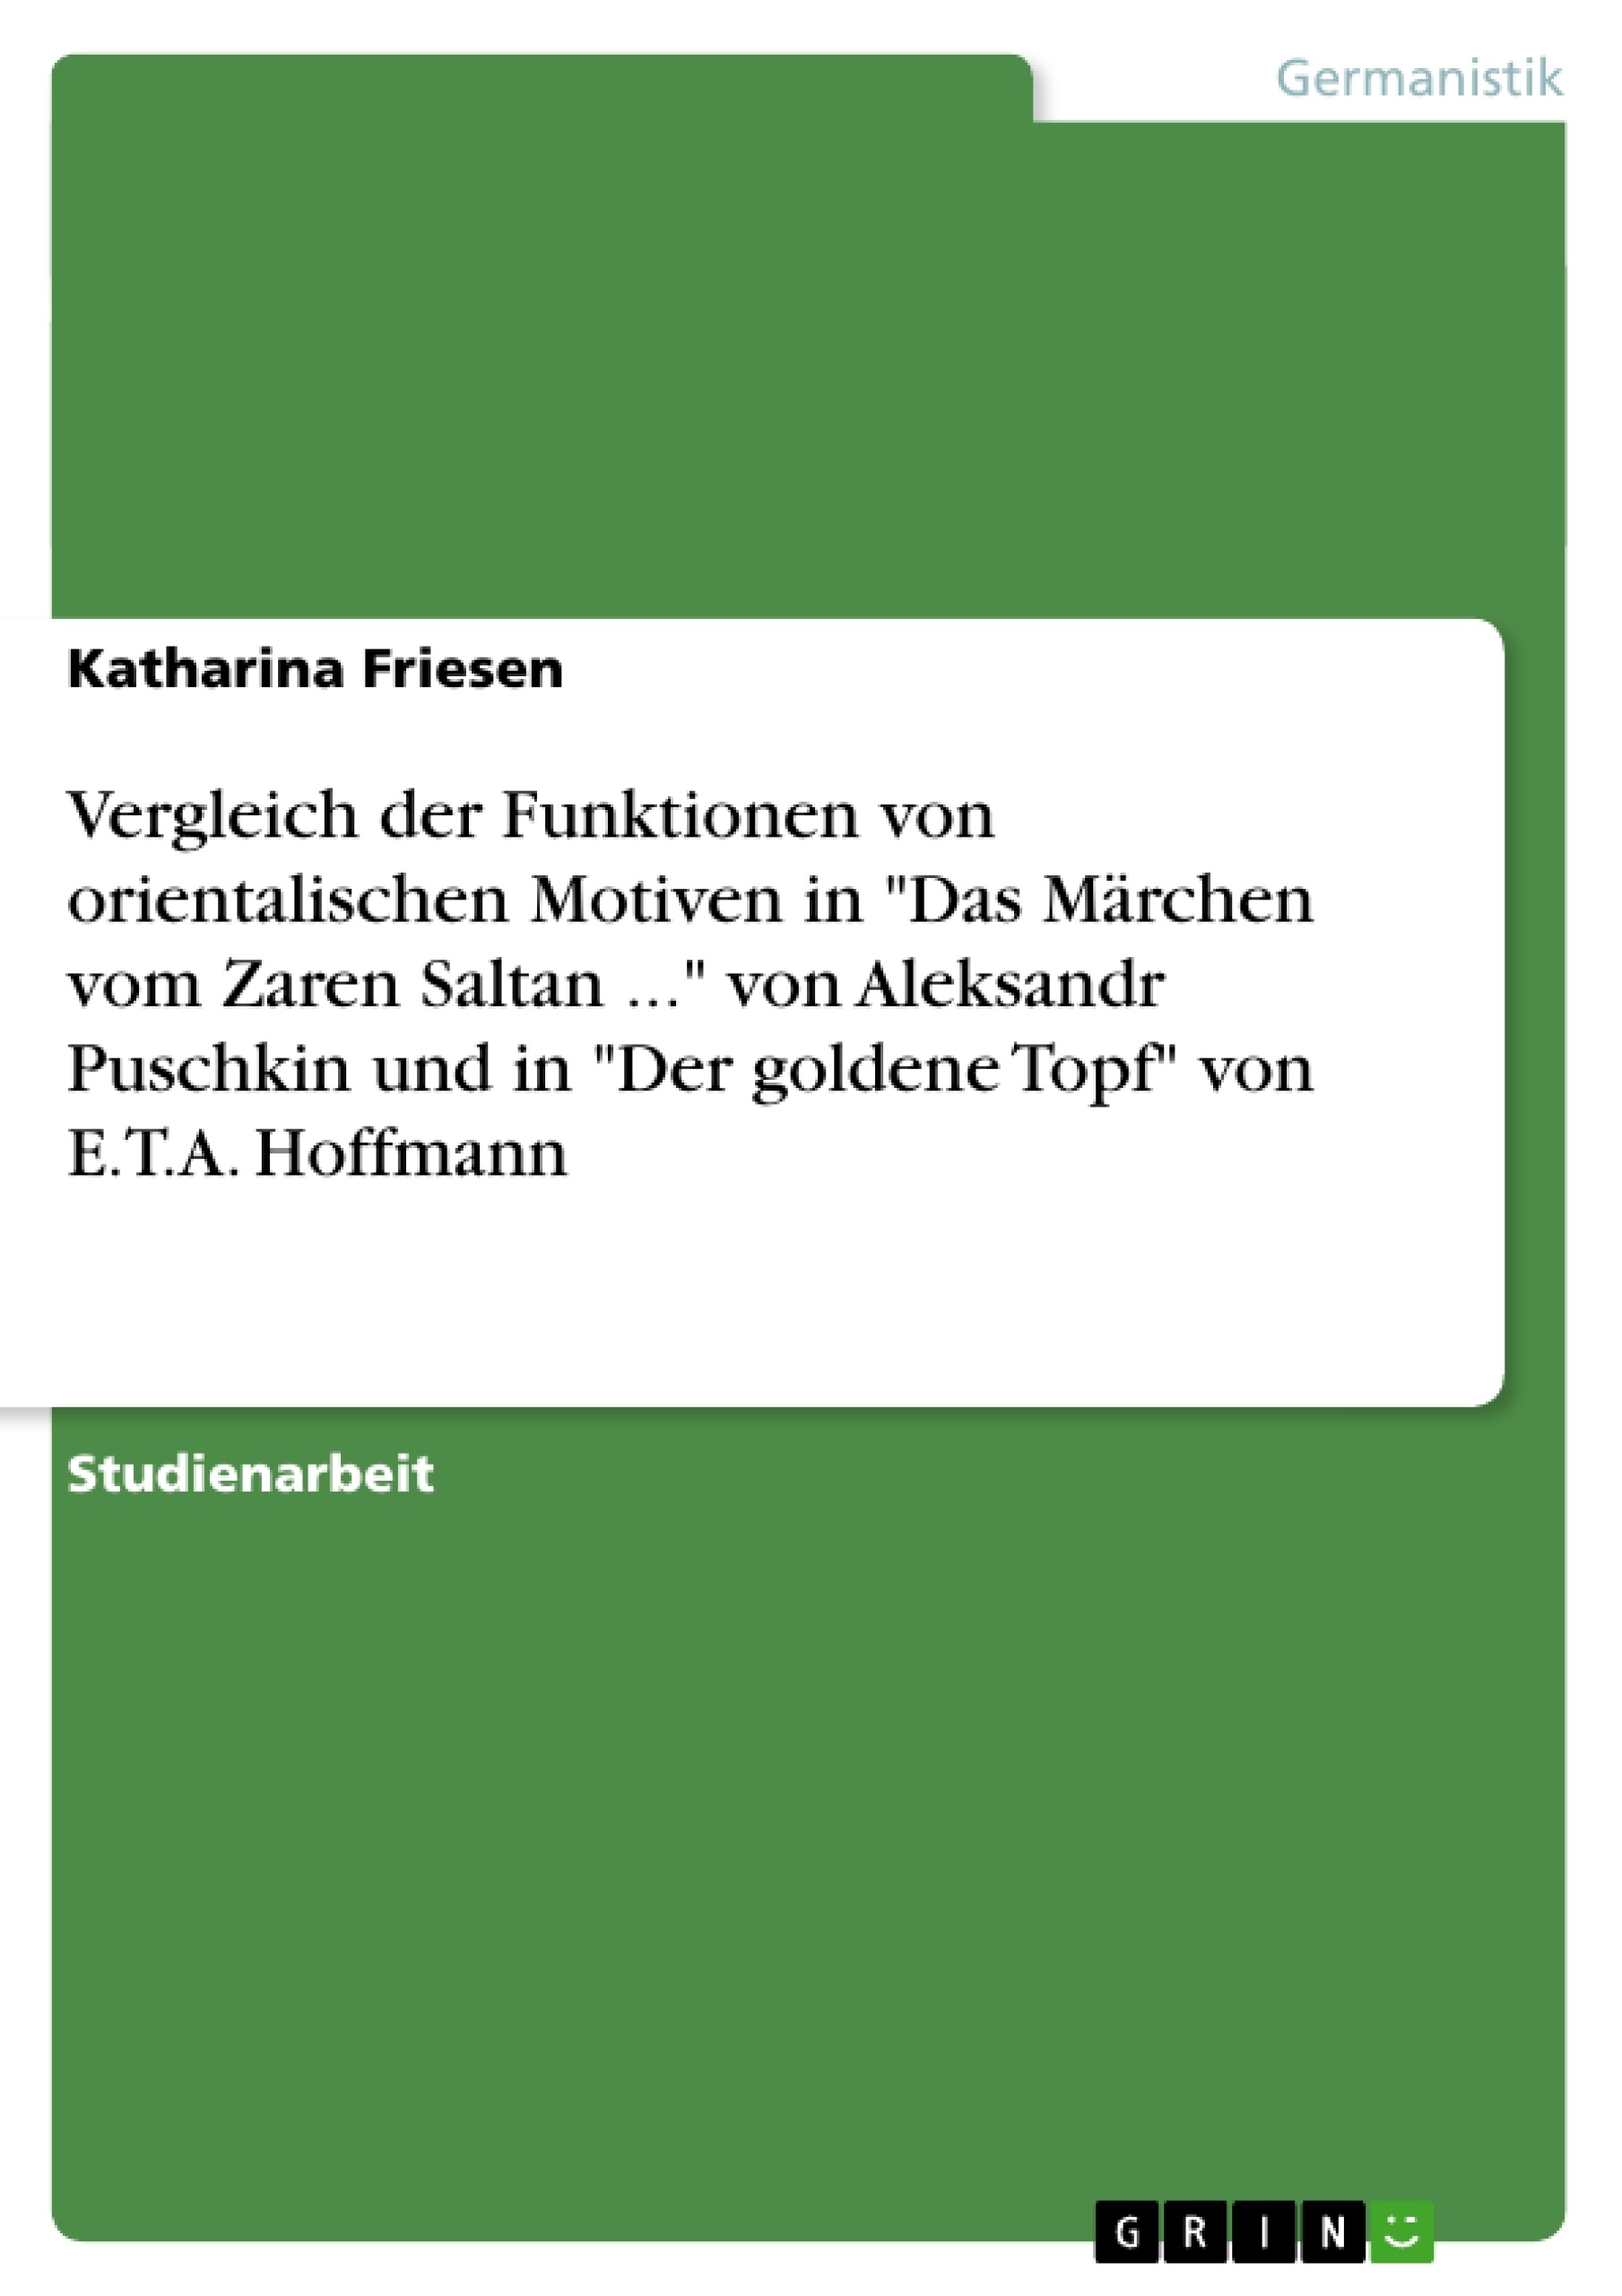 Titel: Vergleich der Funktionen von orientalischen Motiven in "Das Märchen vom Zaren Saltan ..." von Aleksandr Puschkin und in "Der goldene Topf" von E.T.A. Hoffmann